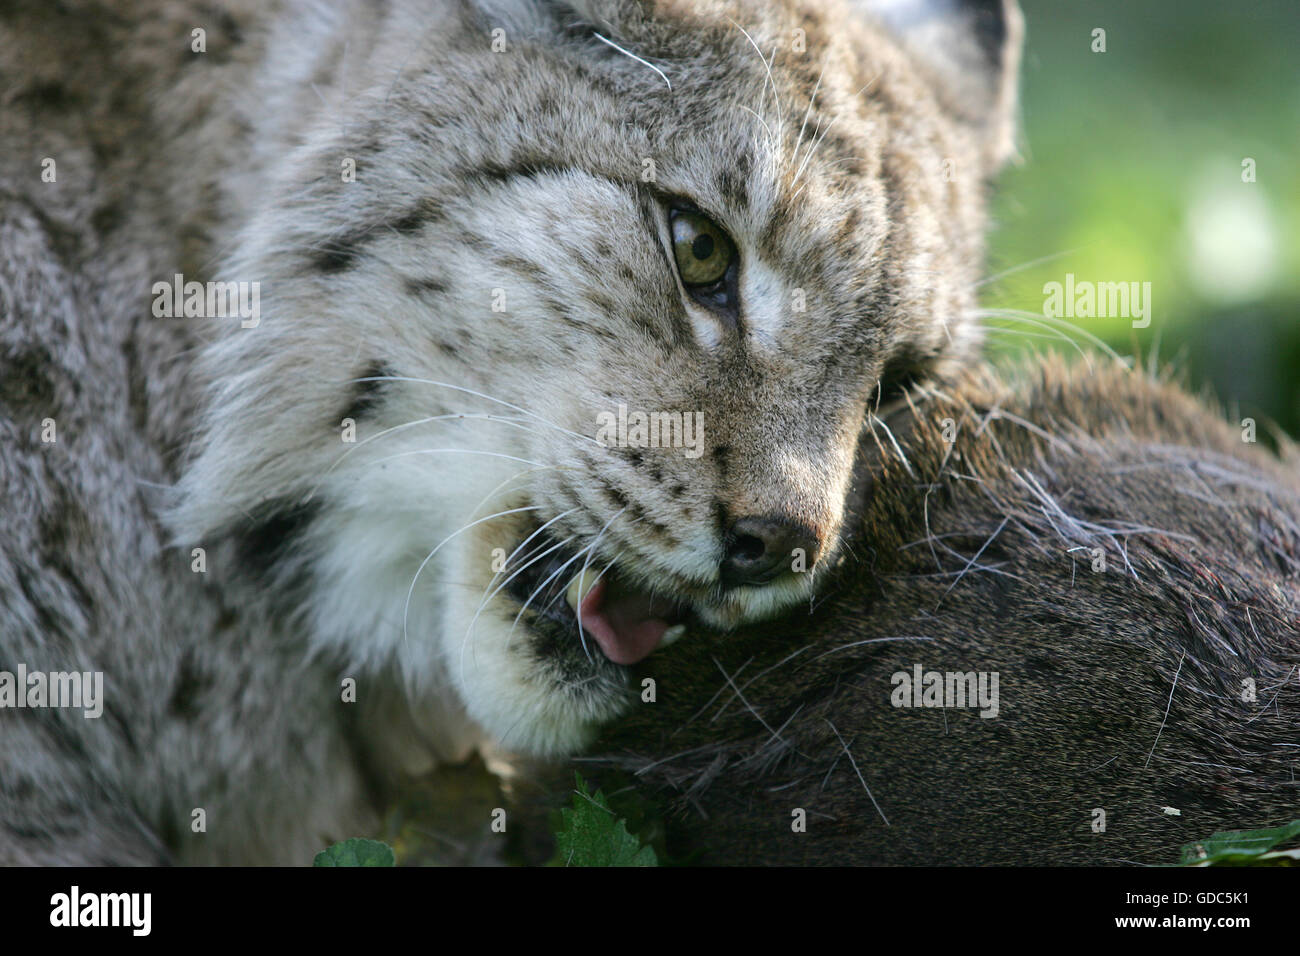 EUROPEAN LYNX felis lynx, ADULTE WITH A ROE DEER KILL Stock Photo